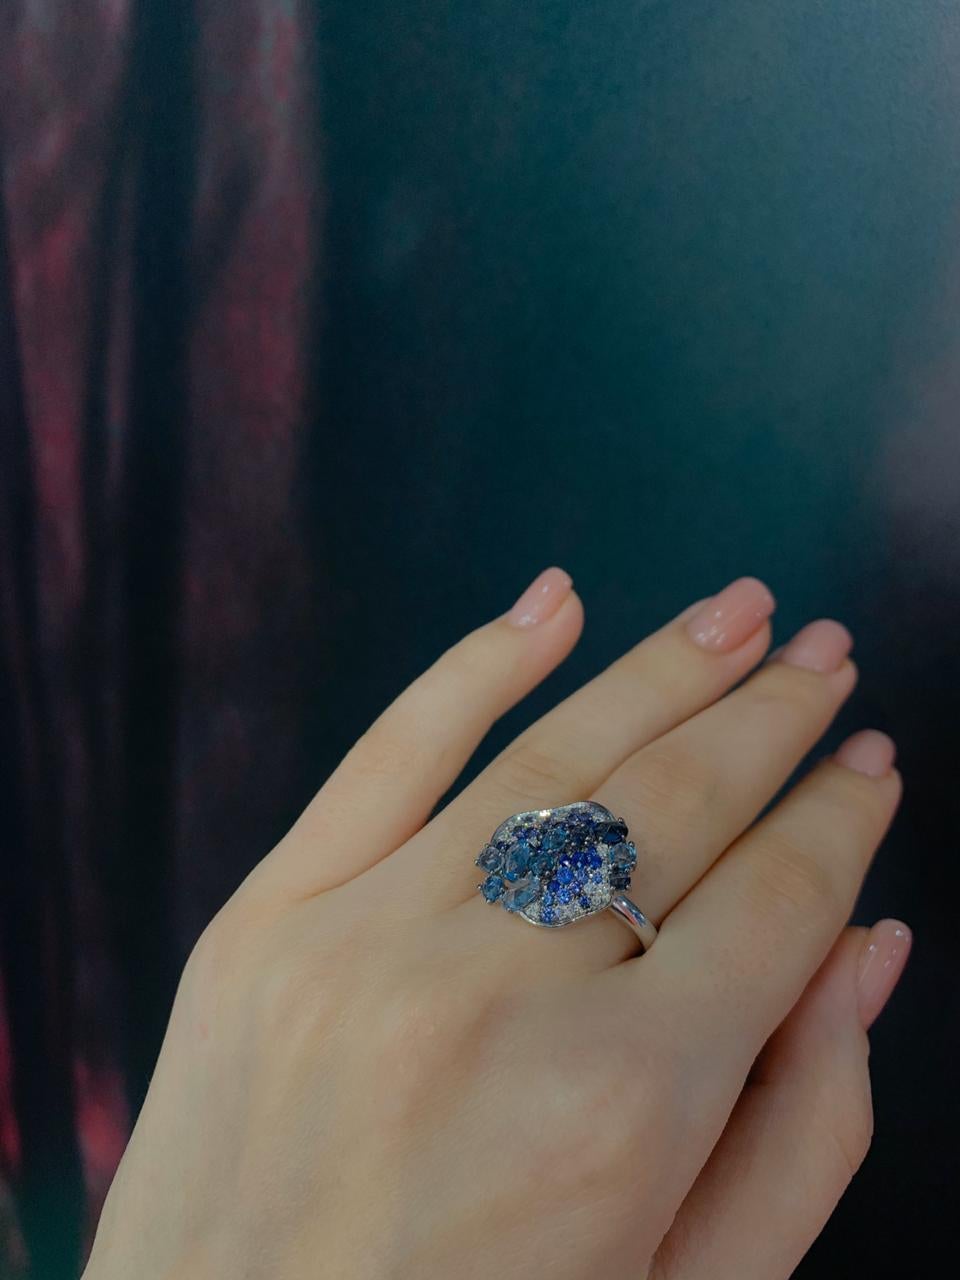 Inspiriert von den kristallklaren Gewässern des Mittelmeers, werden die glatten, abgerundeten Formen des Saphirs in diesem Ring durch kontrastierende weiße Diamanten und blaue Topase hervorgehoben.

Ring 14 K Weißgold 
Gewicht 5,0 Gramm 
Diamant